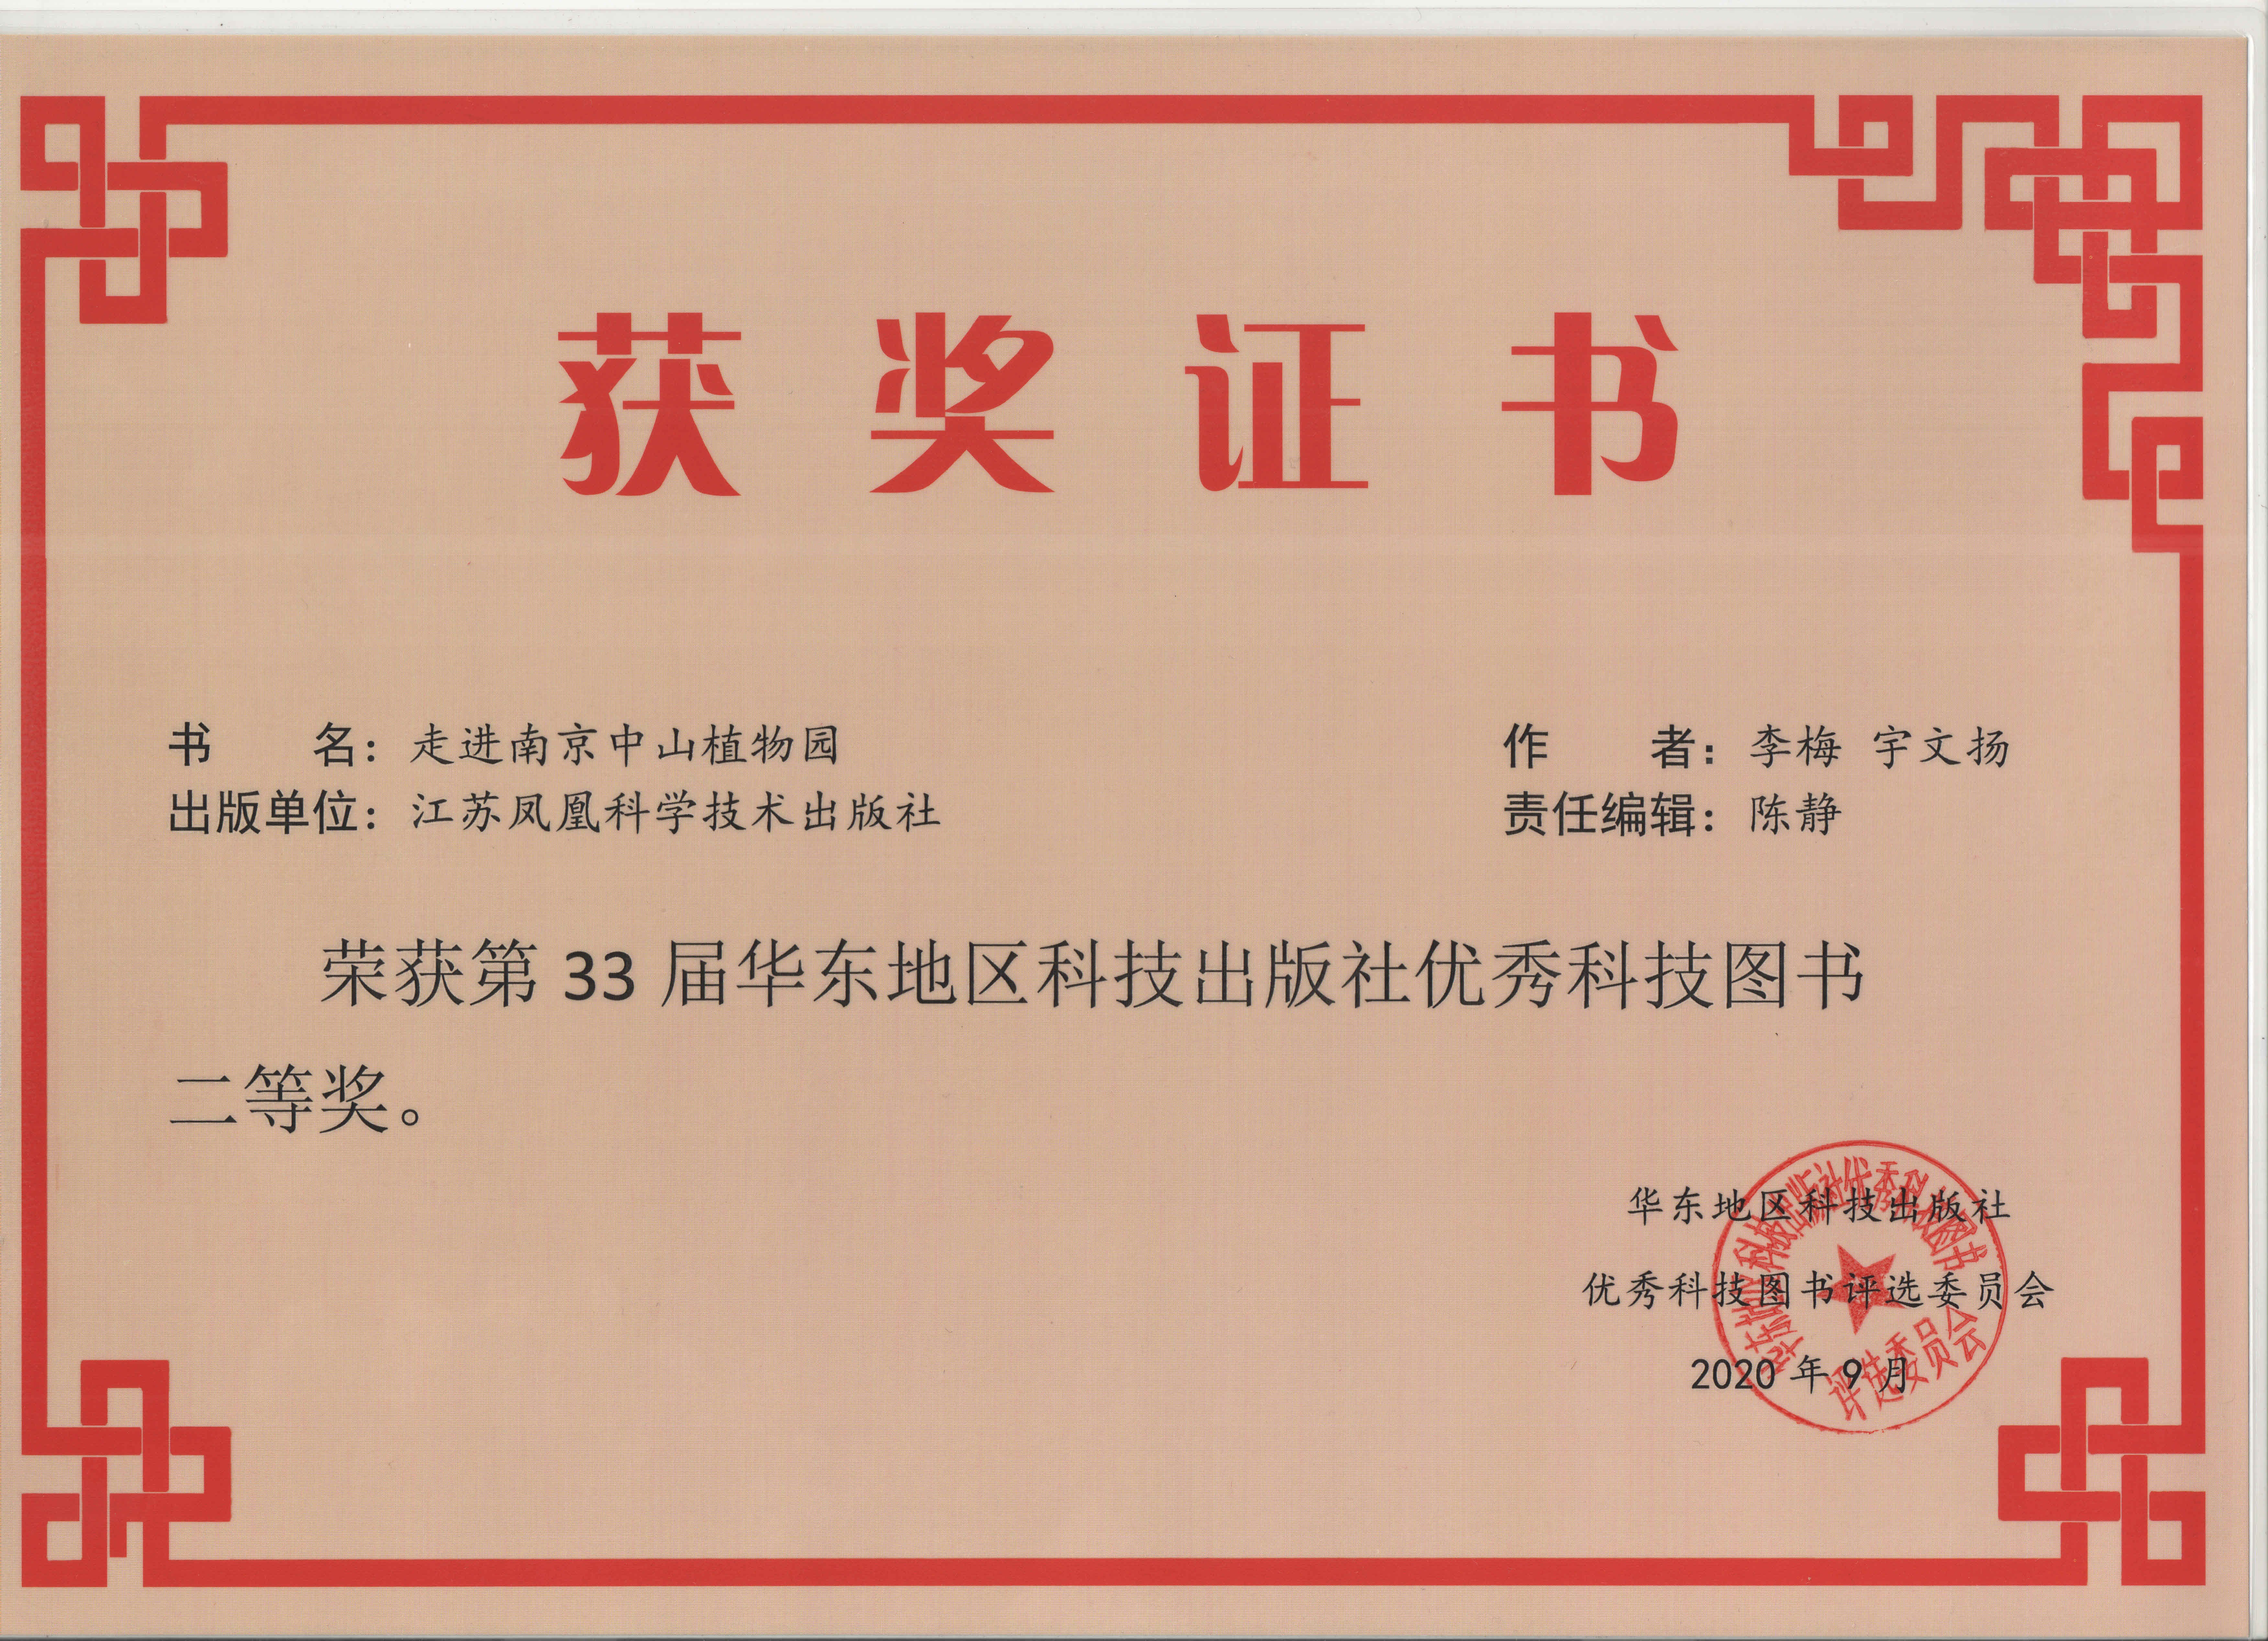 《走进南京中山植物园》获得第三十三届华东地区科技出版社优秀科技图书二等奖